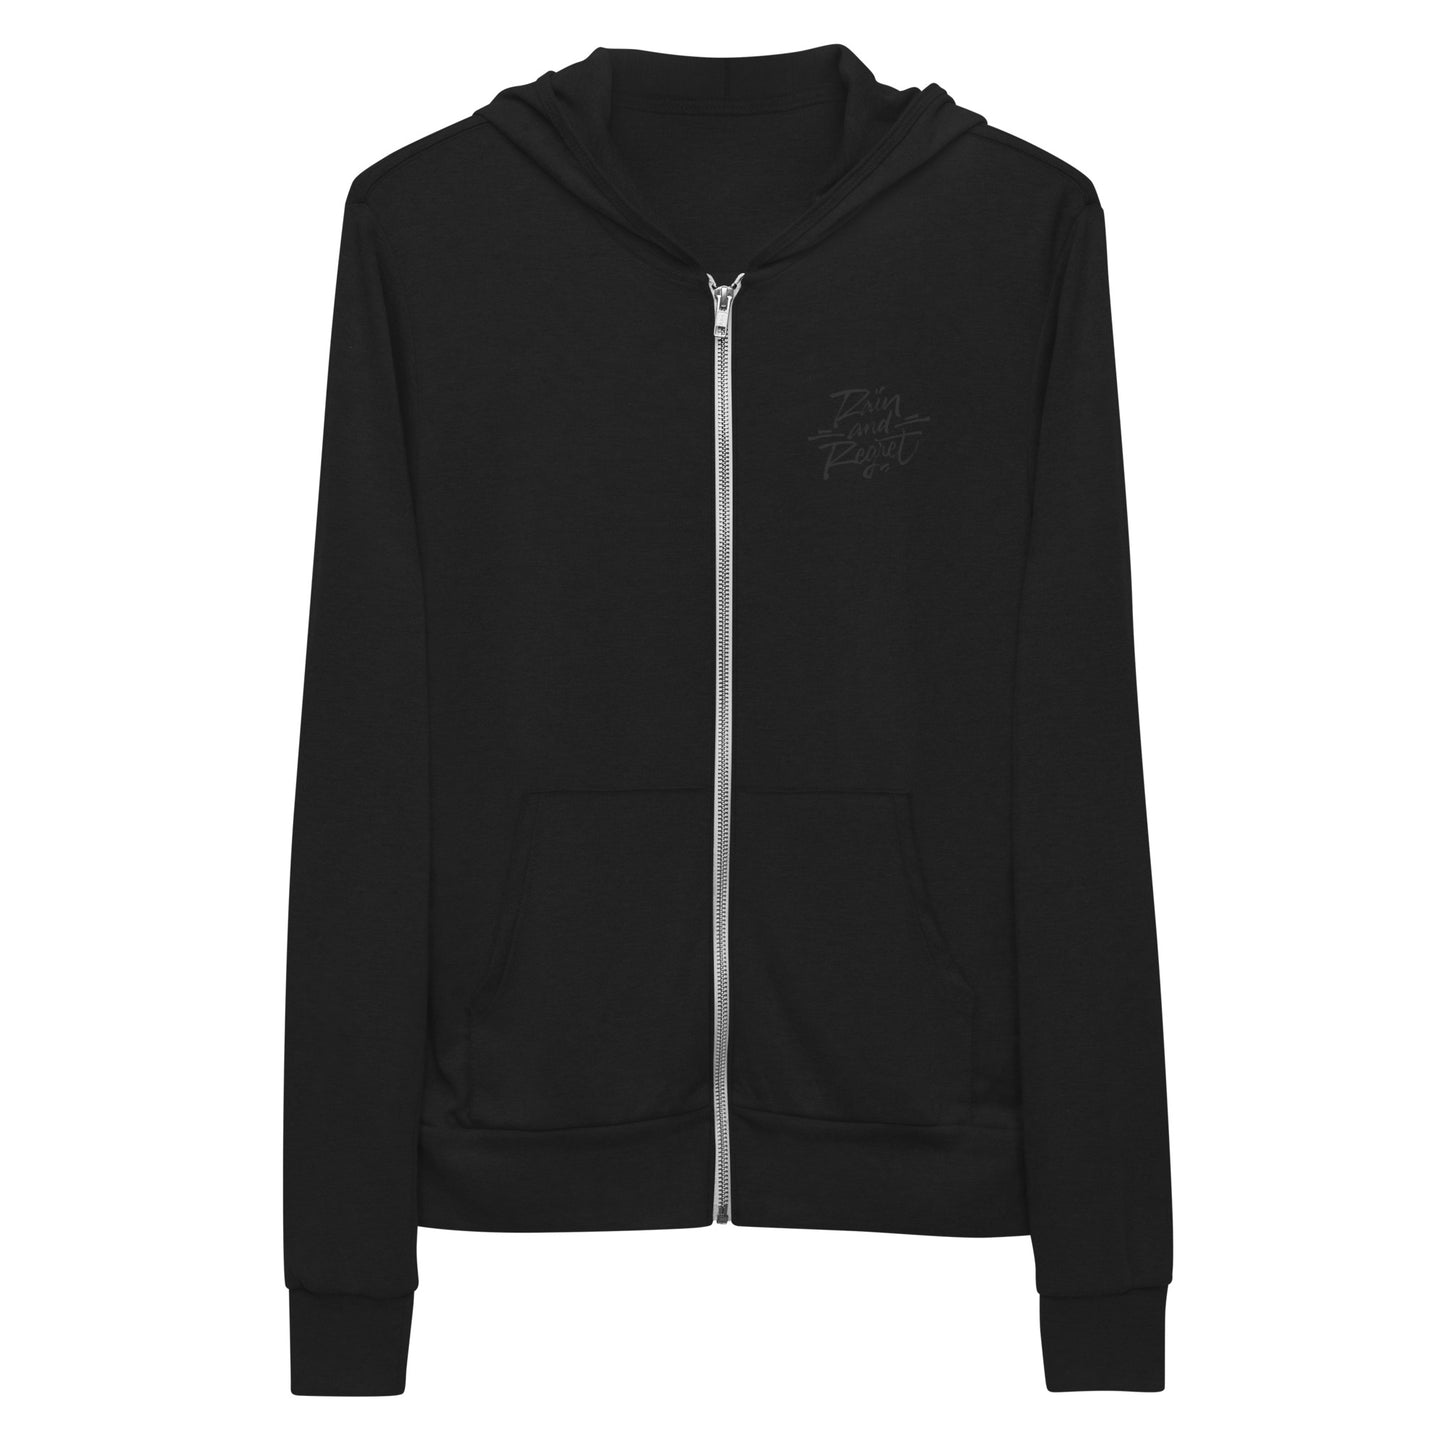 Rain and Regret Caligraffiti Unisex zip hoodie | rainandregret